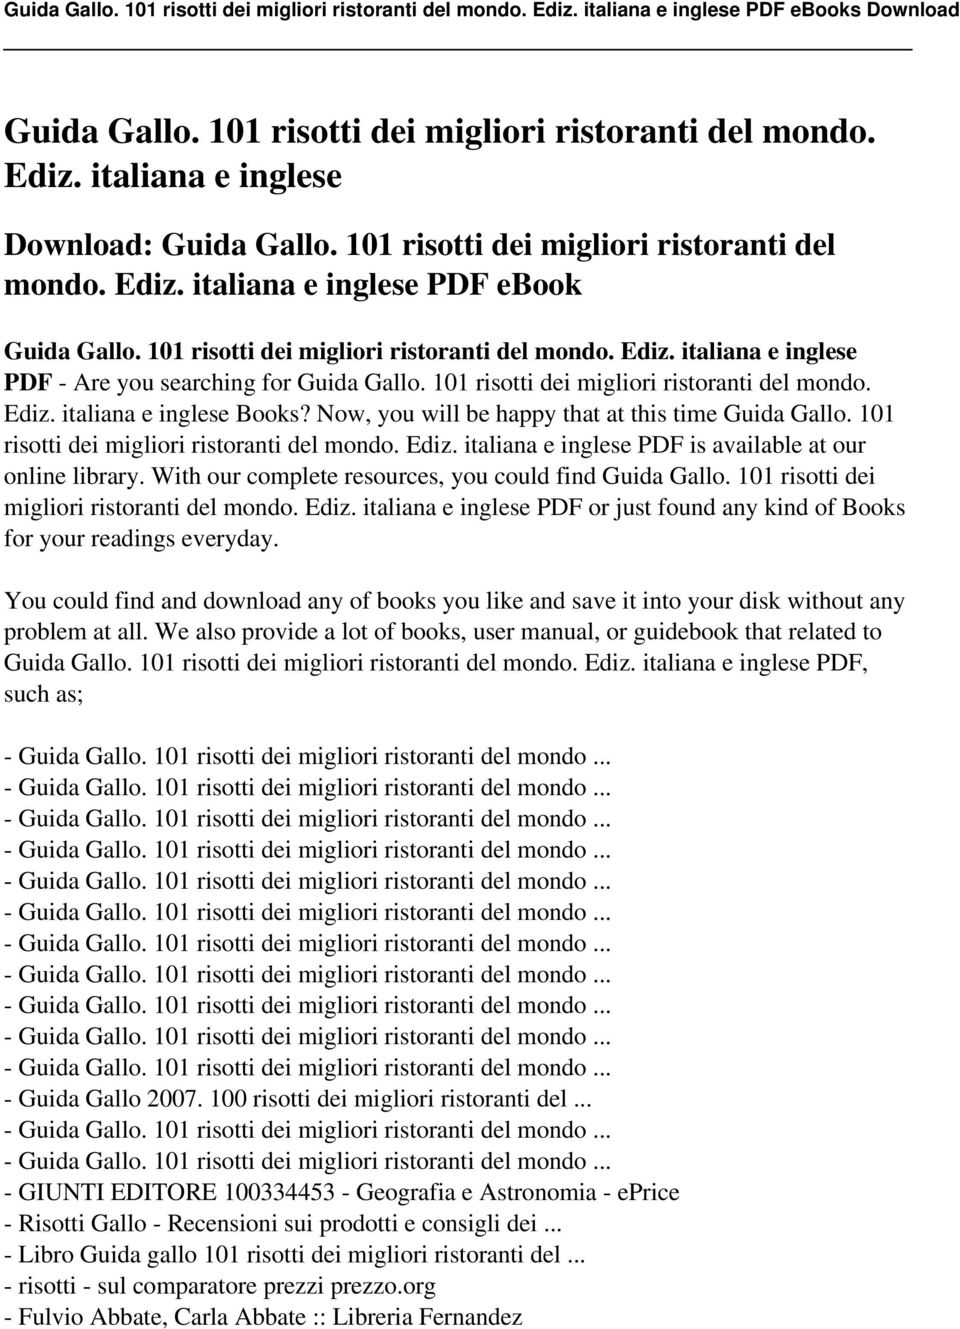 Now, you will be happy that at this time Guida Gallo. 101 risotti dei migliori ristoranti del mondo. Ediz. italiana e inglese PDF is available at our online library.